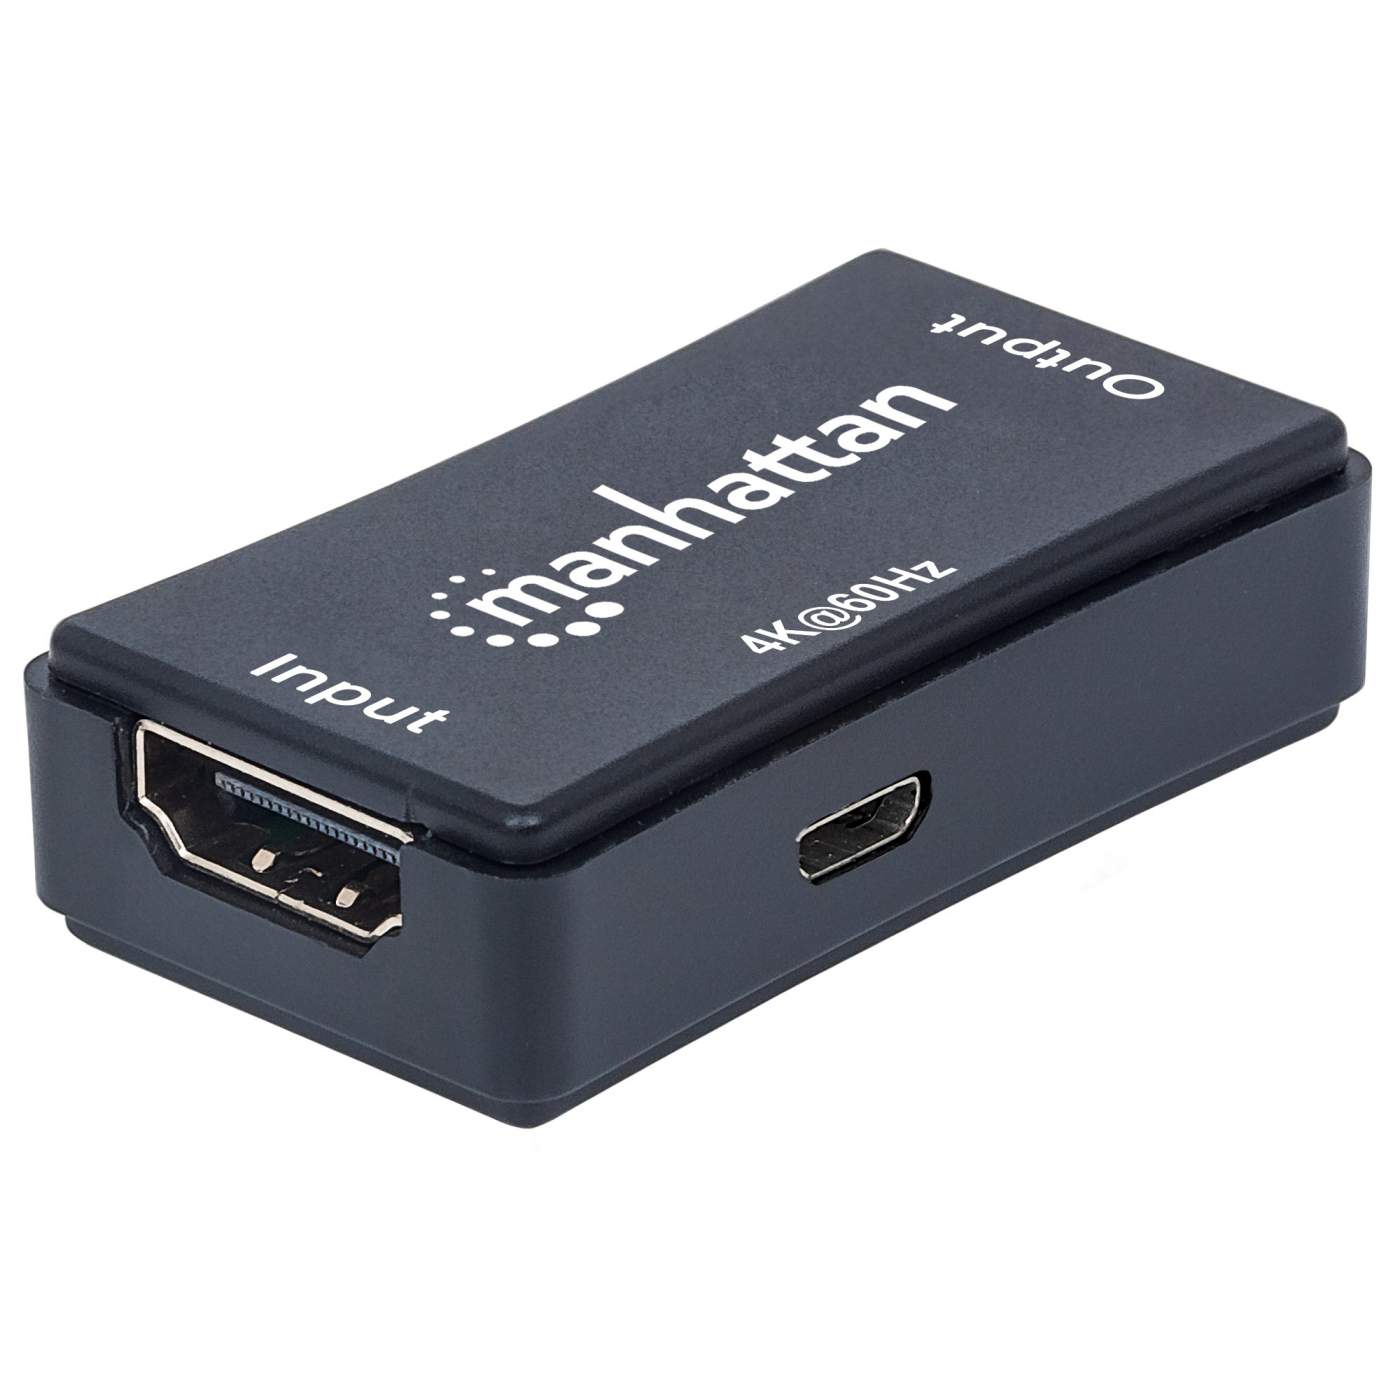 Manhattan 8K@60Hz Bi-Directional 2-Port HDMI Switch (207997)